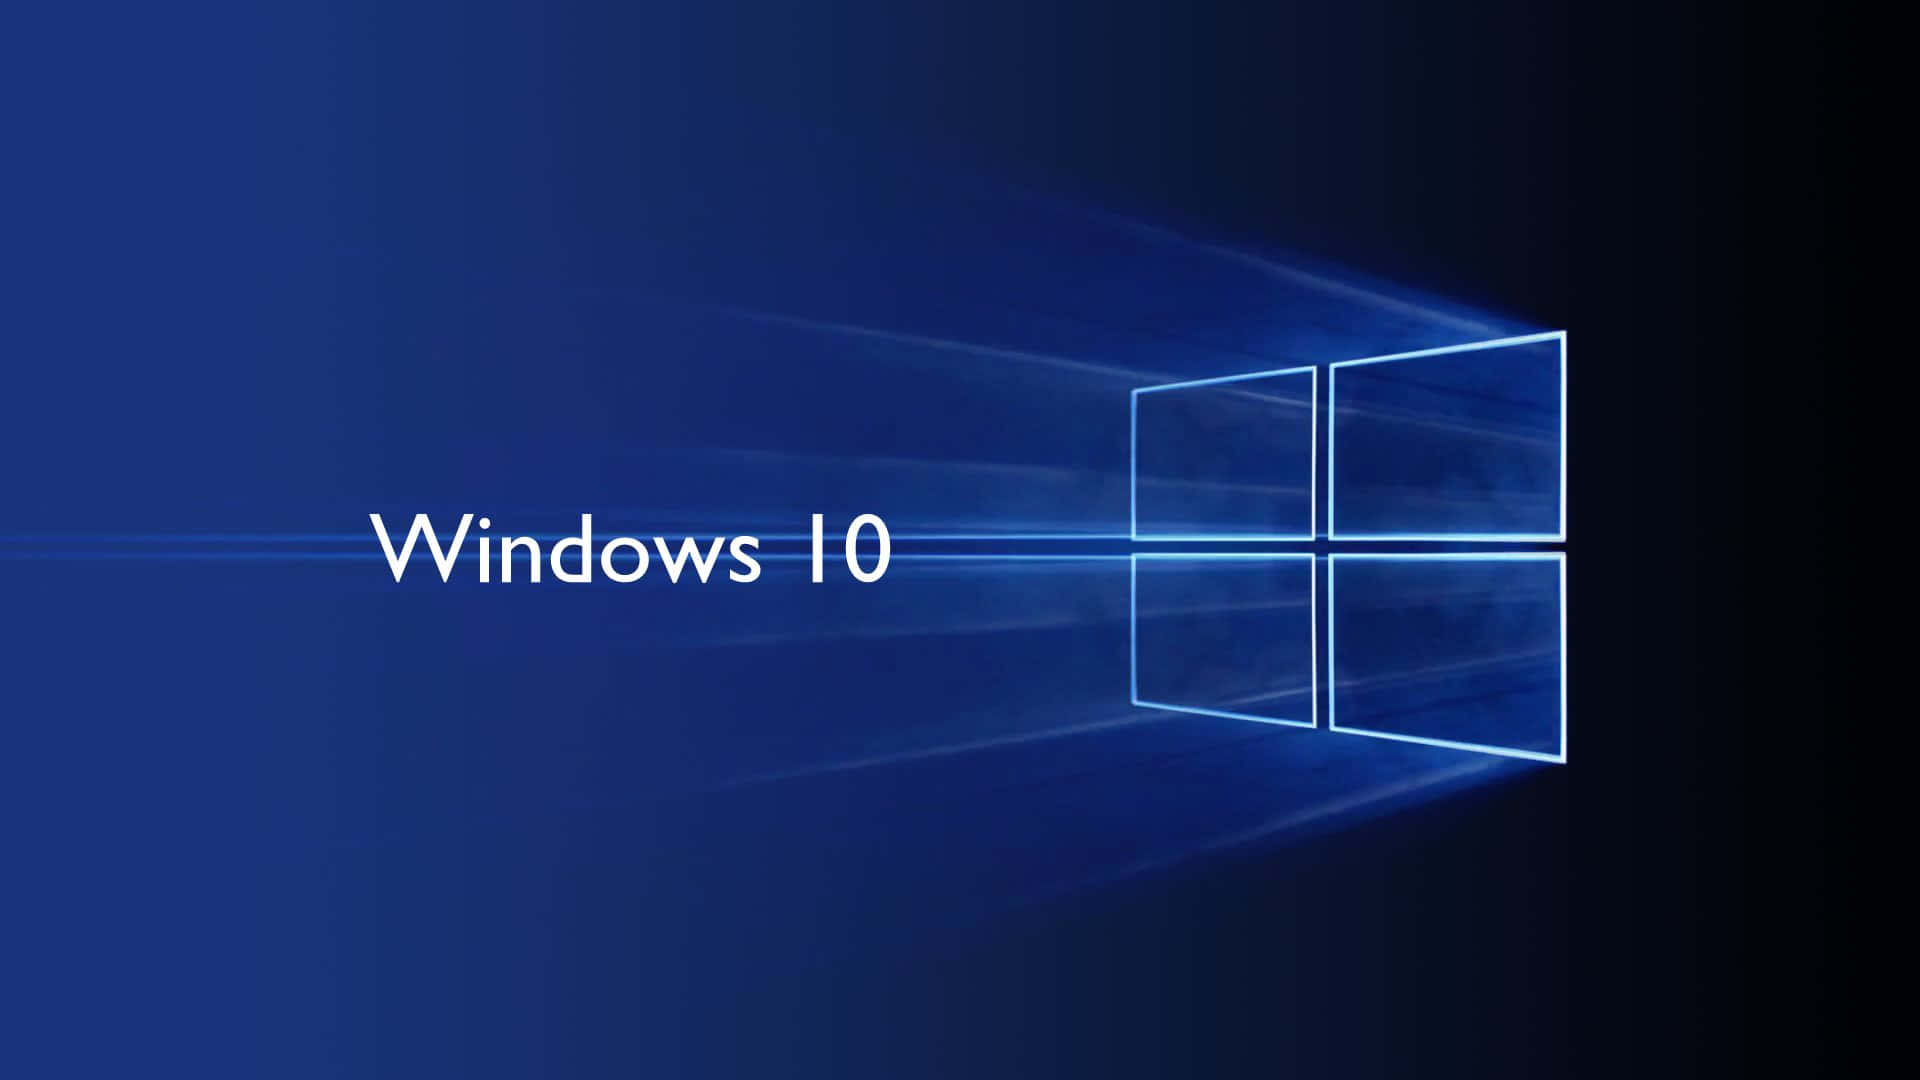 Windows 10 Cumulative Update Process Wallpaper